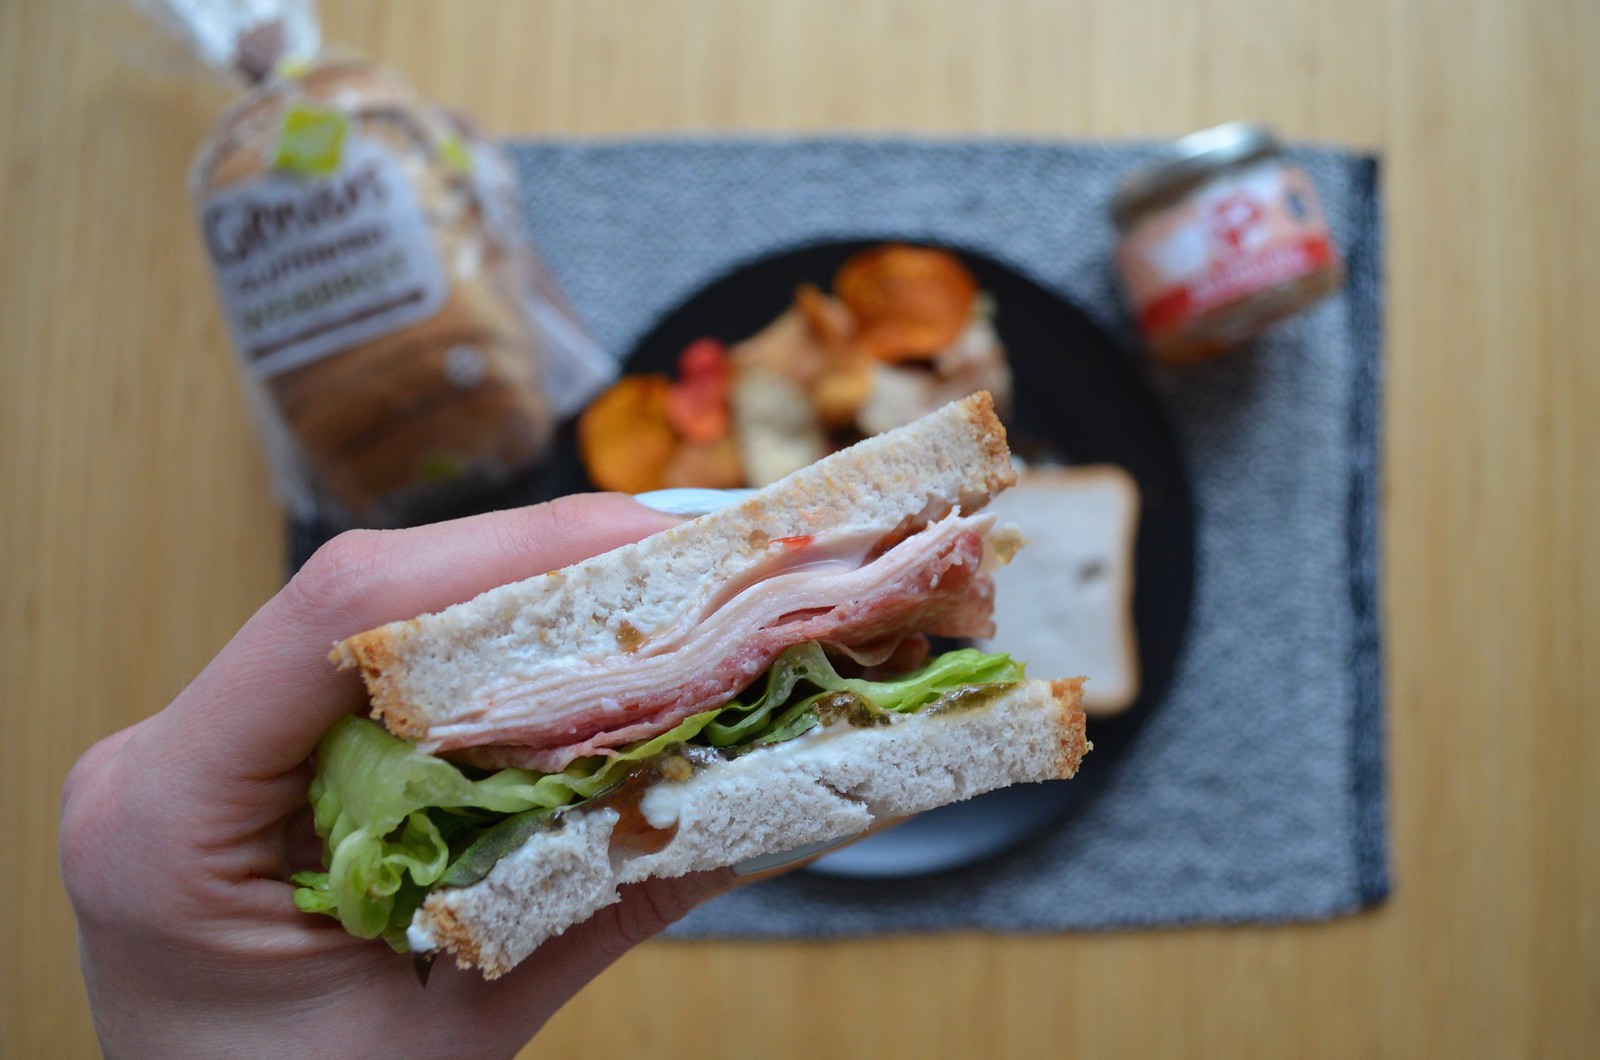 Genius Gluten Free bread in Germany review Weissbrot sandwich